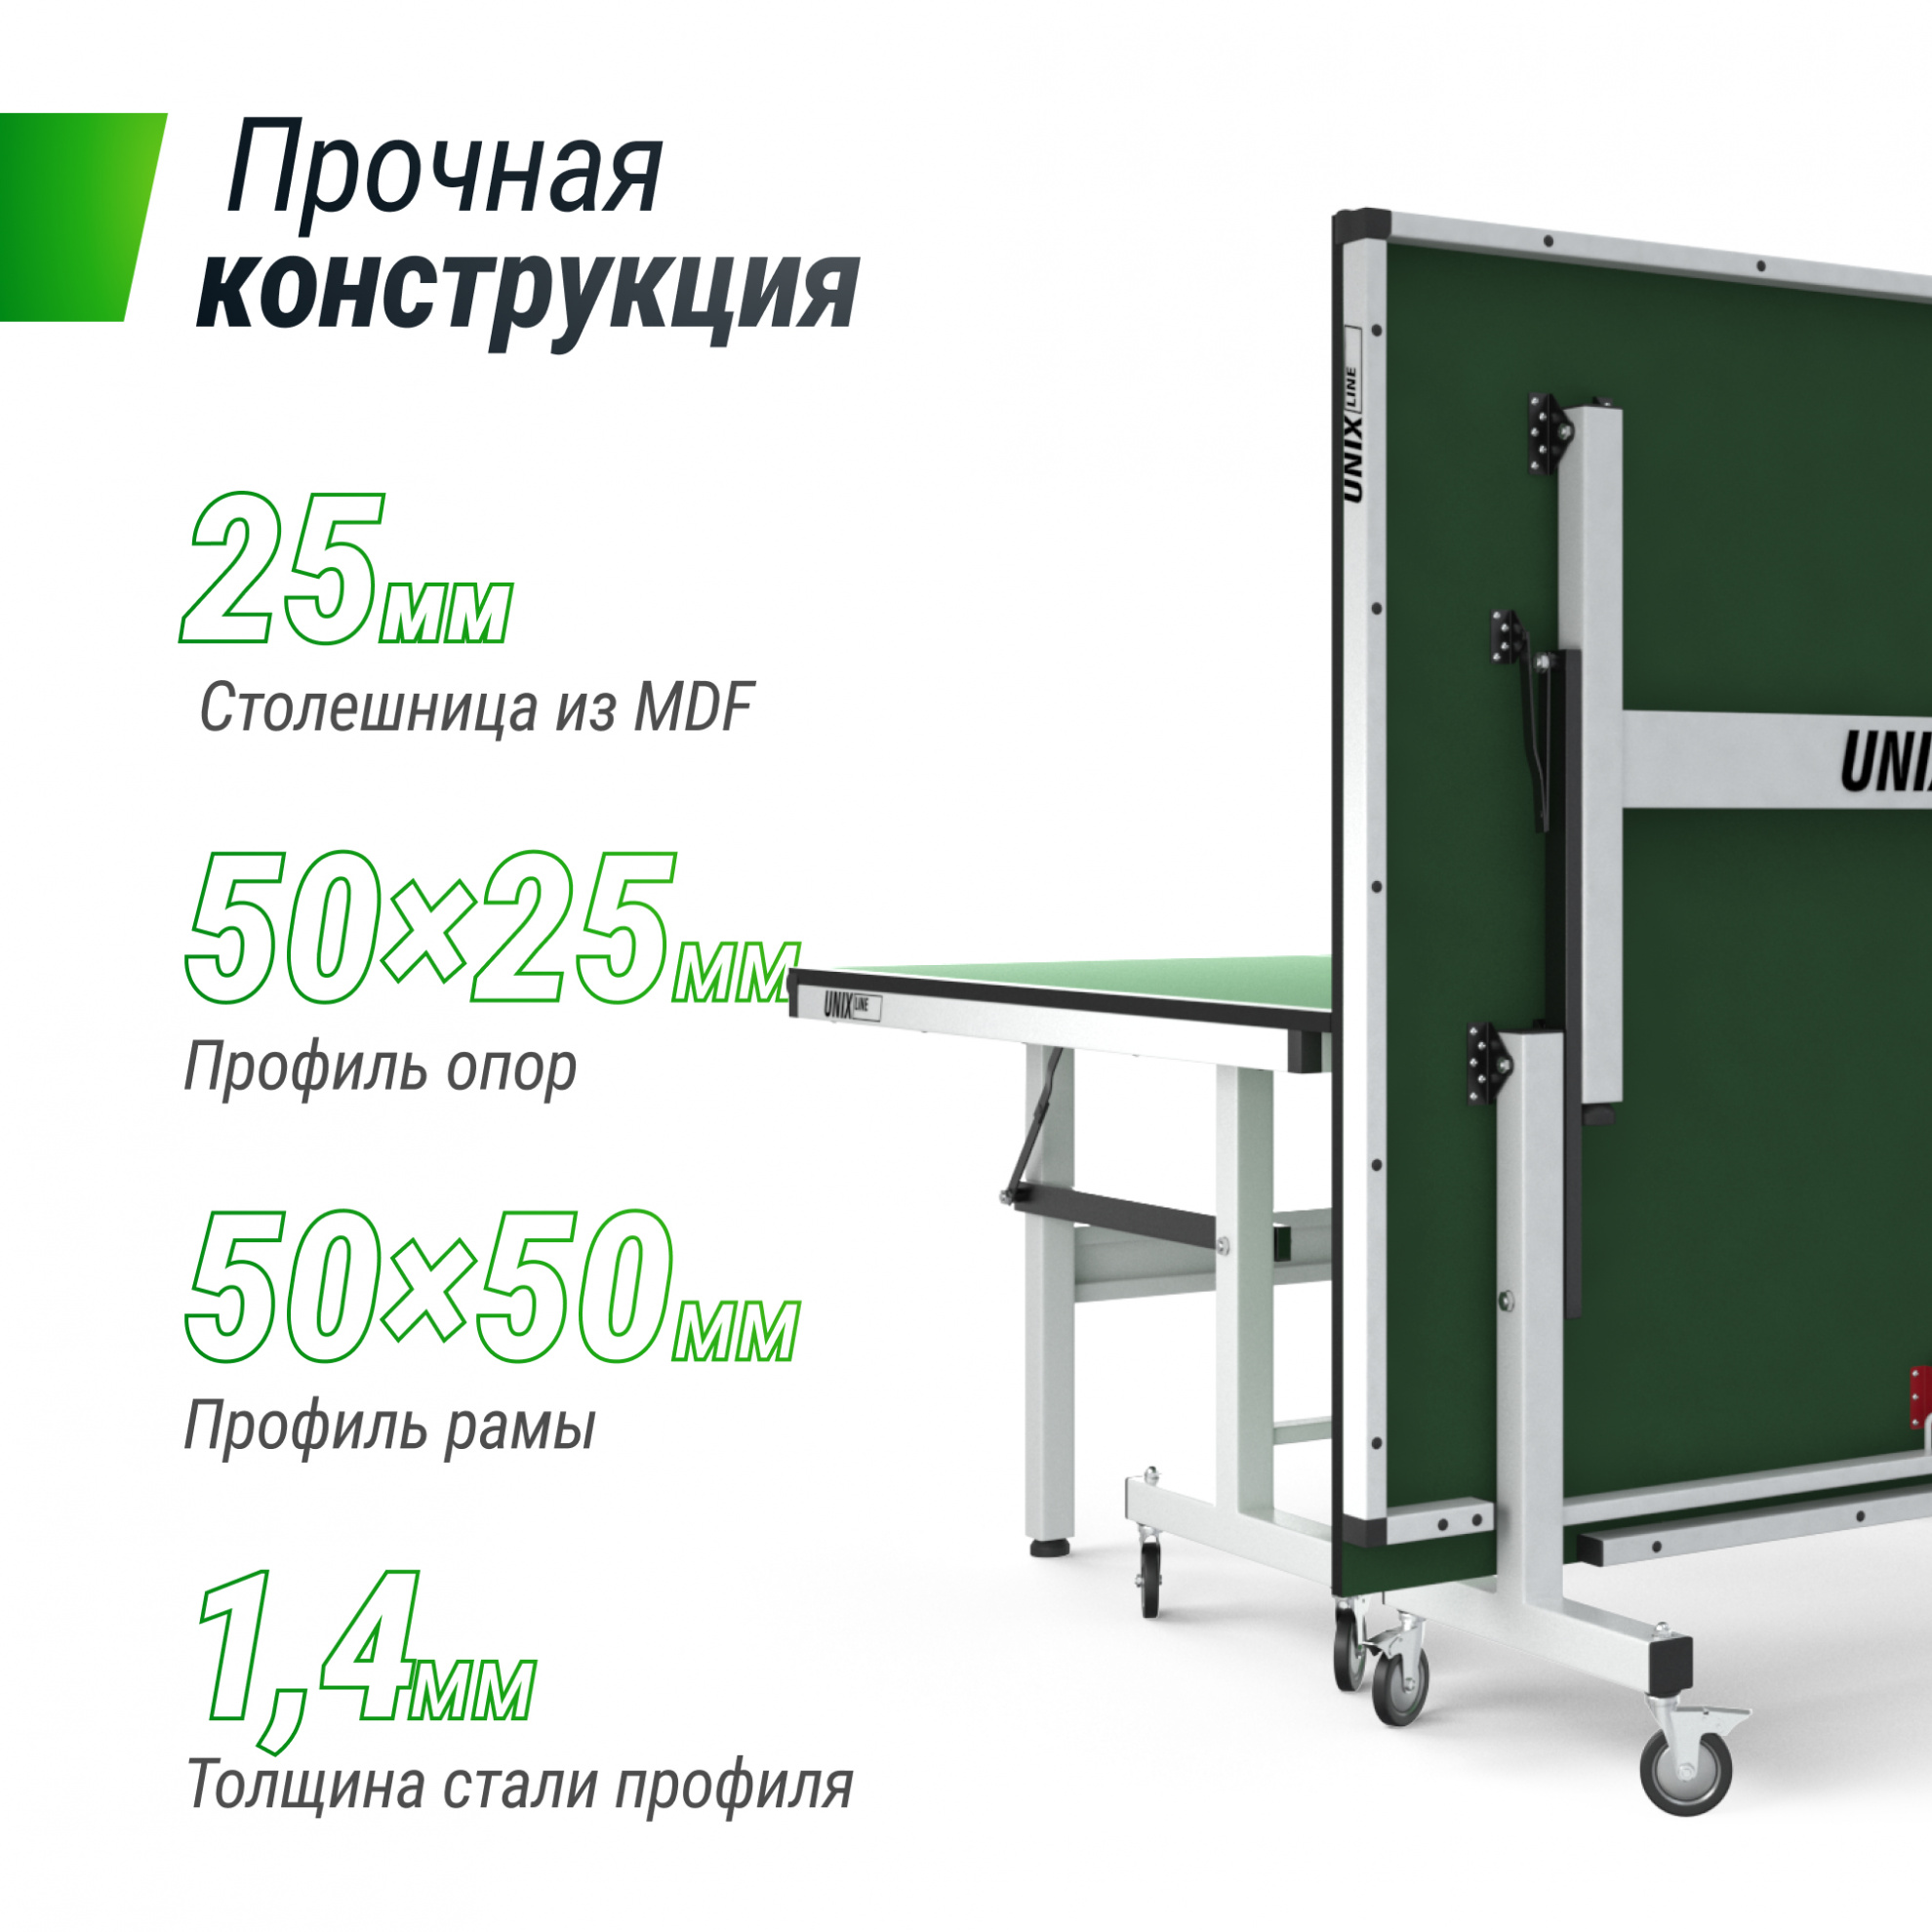 Теннисный стол для помещений Unix Line 25 mm MDF (green)